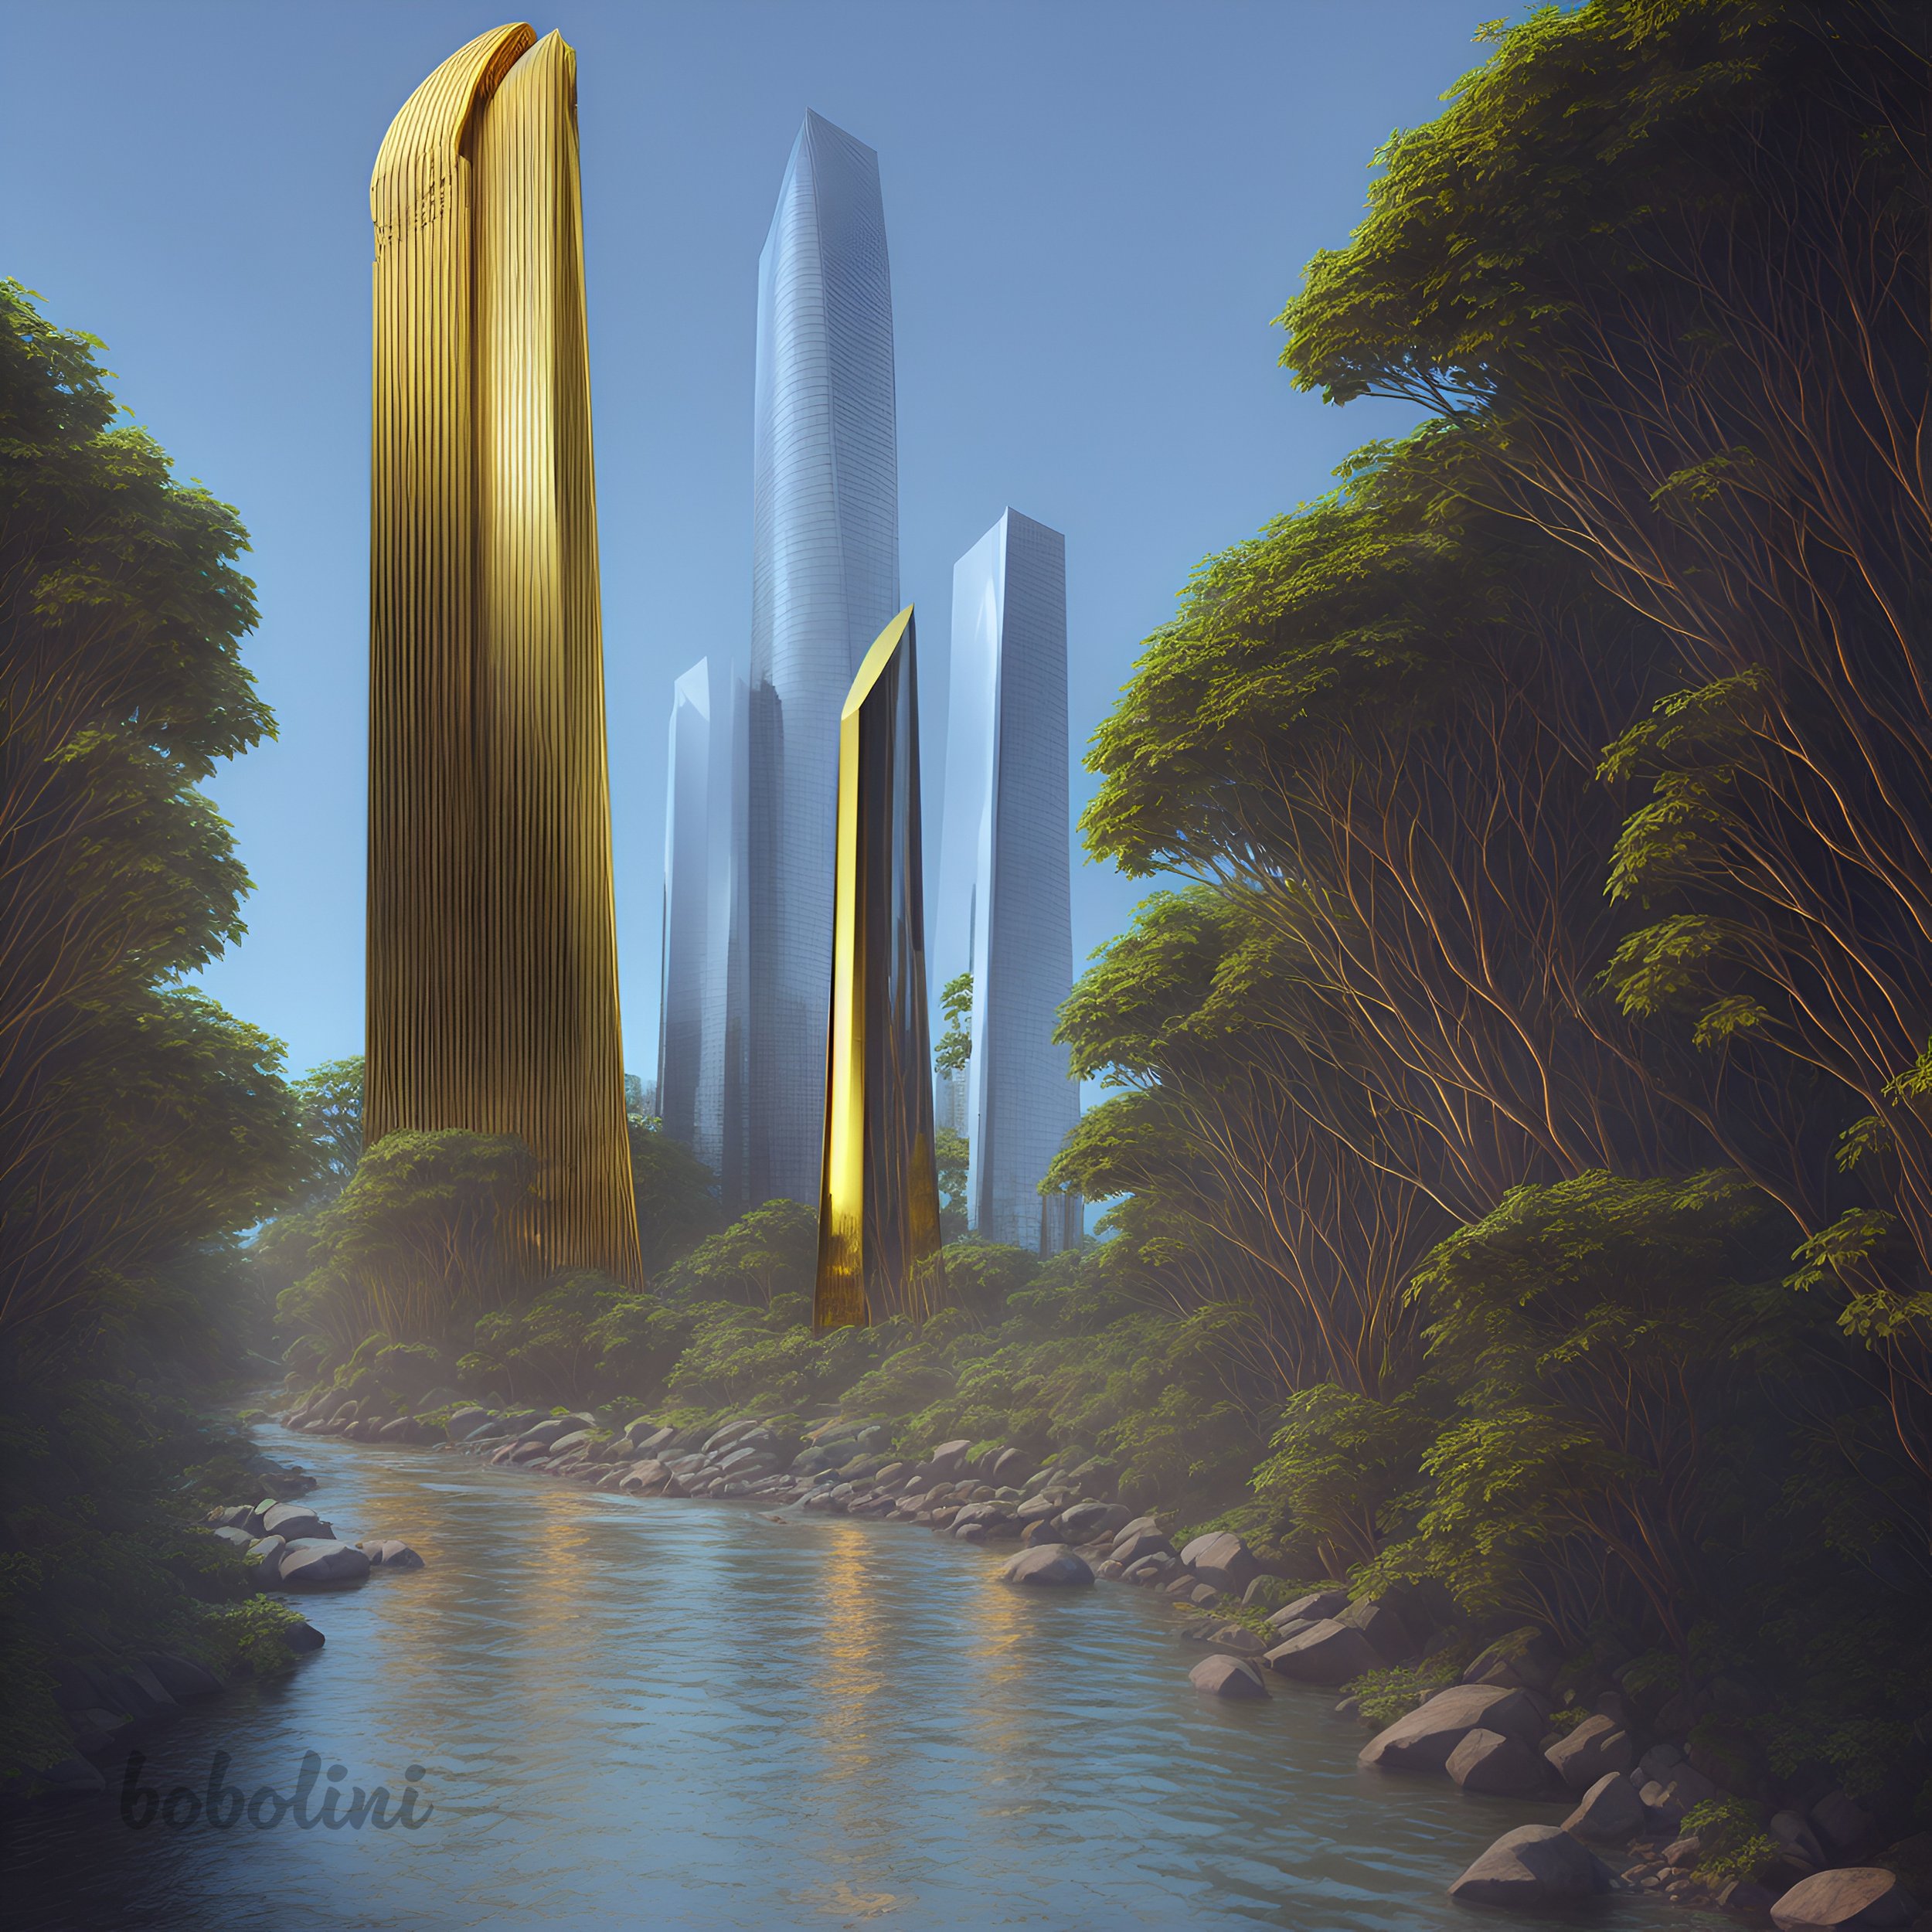 Scifi city skyscraper view concept Art by Rizwan azim on Dribbble